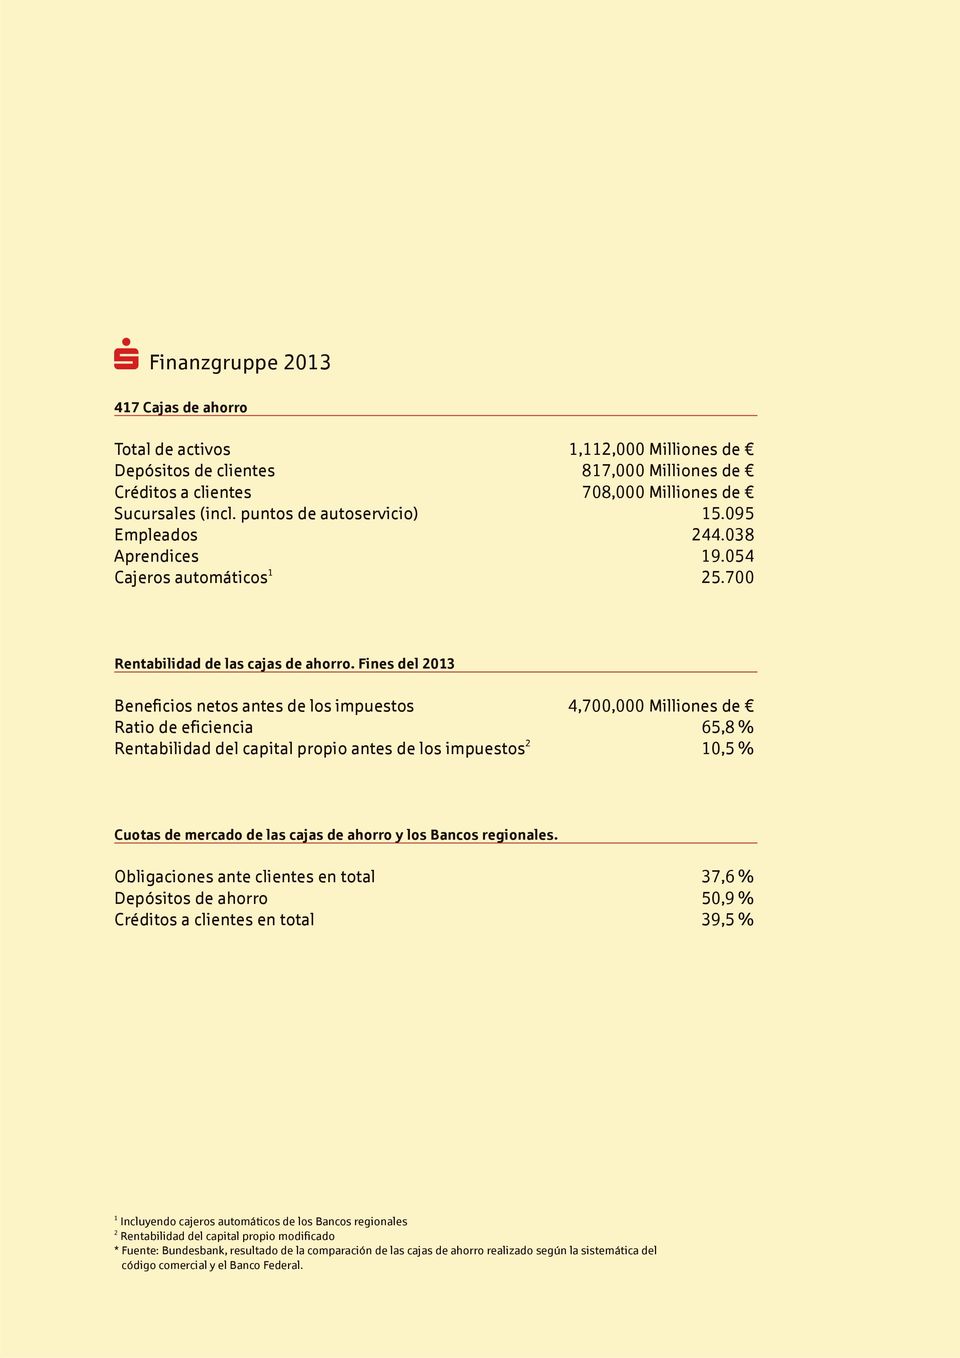 Fines del 2013 Beneficios netos antes de los impuestos 4,700,000 Milliones de Ratio de eficiencia 65,8 % Rentabilidad del capital propio antes de los impuestos 2 10,5 % Cuotas de mercado de las cajas